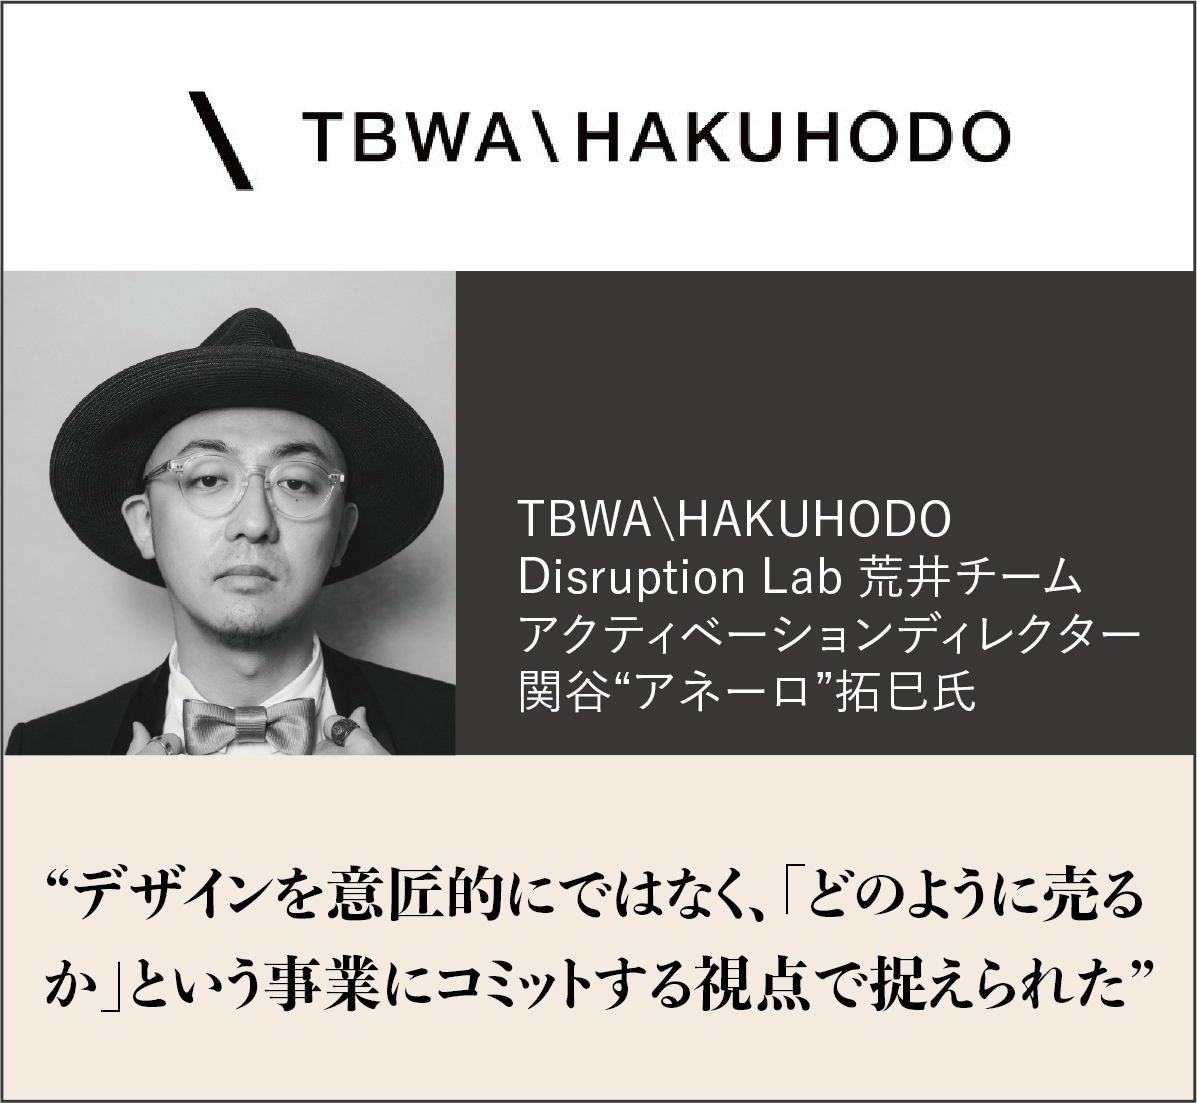 TBWA\HAKUHODO　Disruption Lab 荒井チーム アクティベーションディレクター 関谷”アネーロ”拓巳氏　”デザインを意匠的にではなく、「どのように売るか」という事業にコミットする視点で捉えられた”